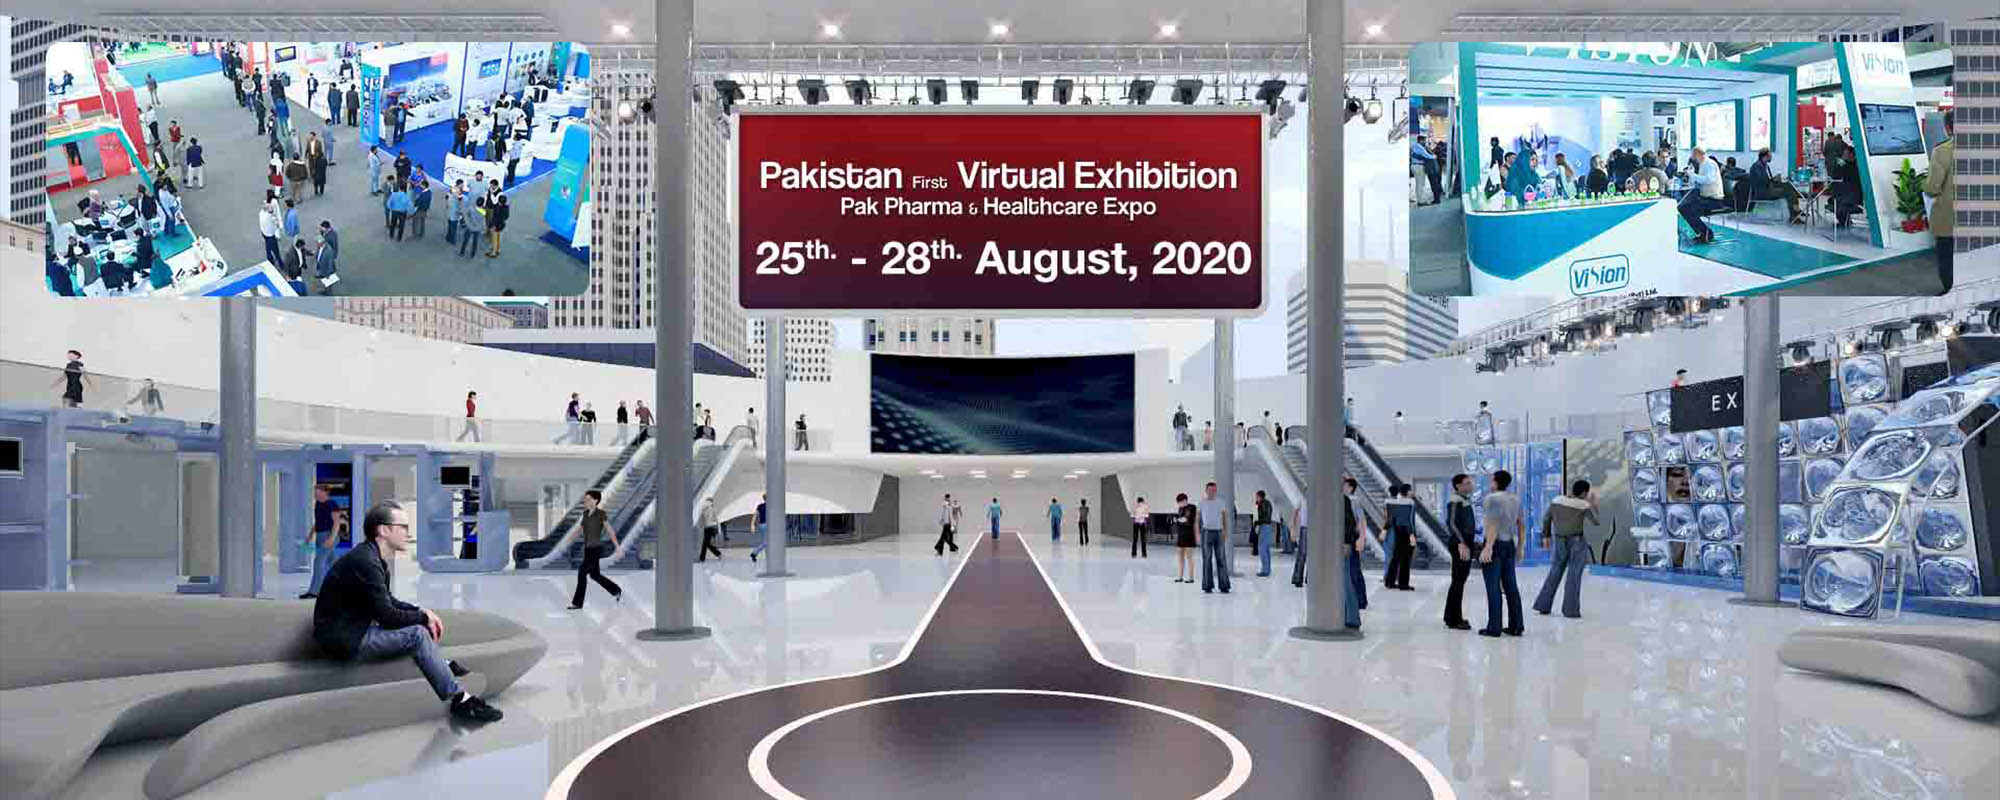 Virtual Expo